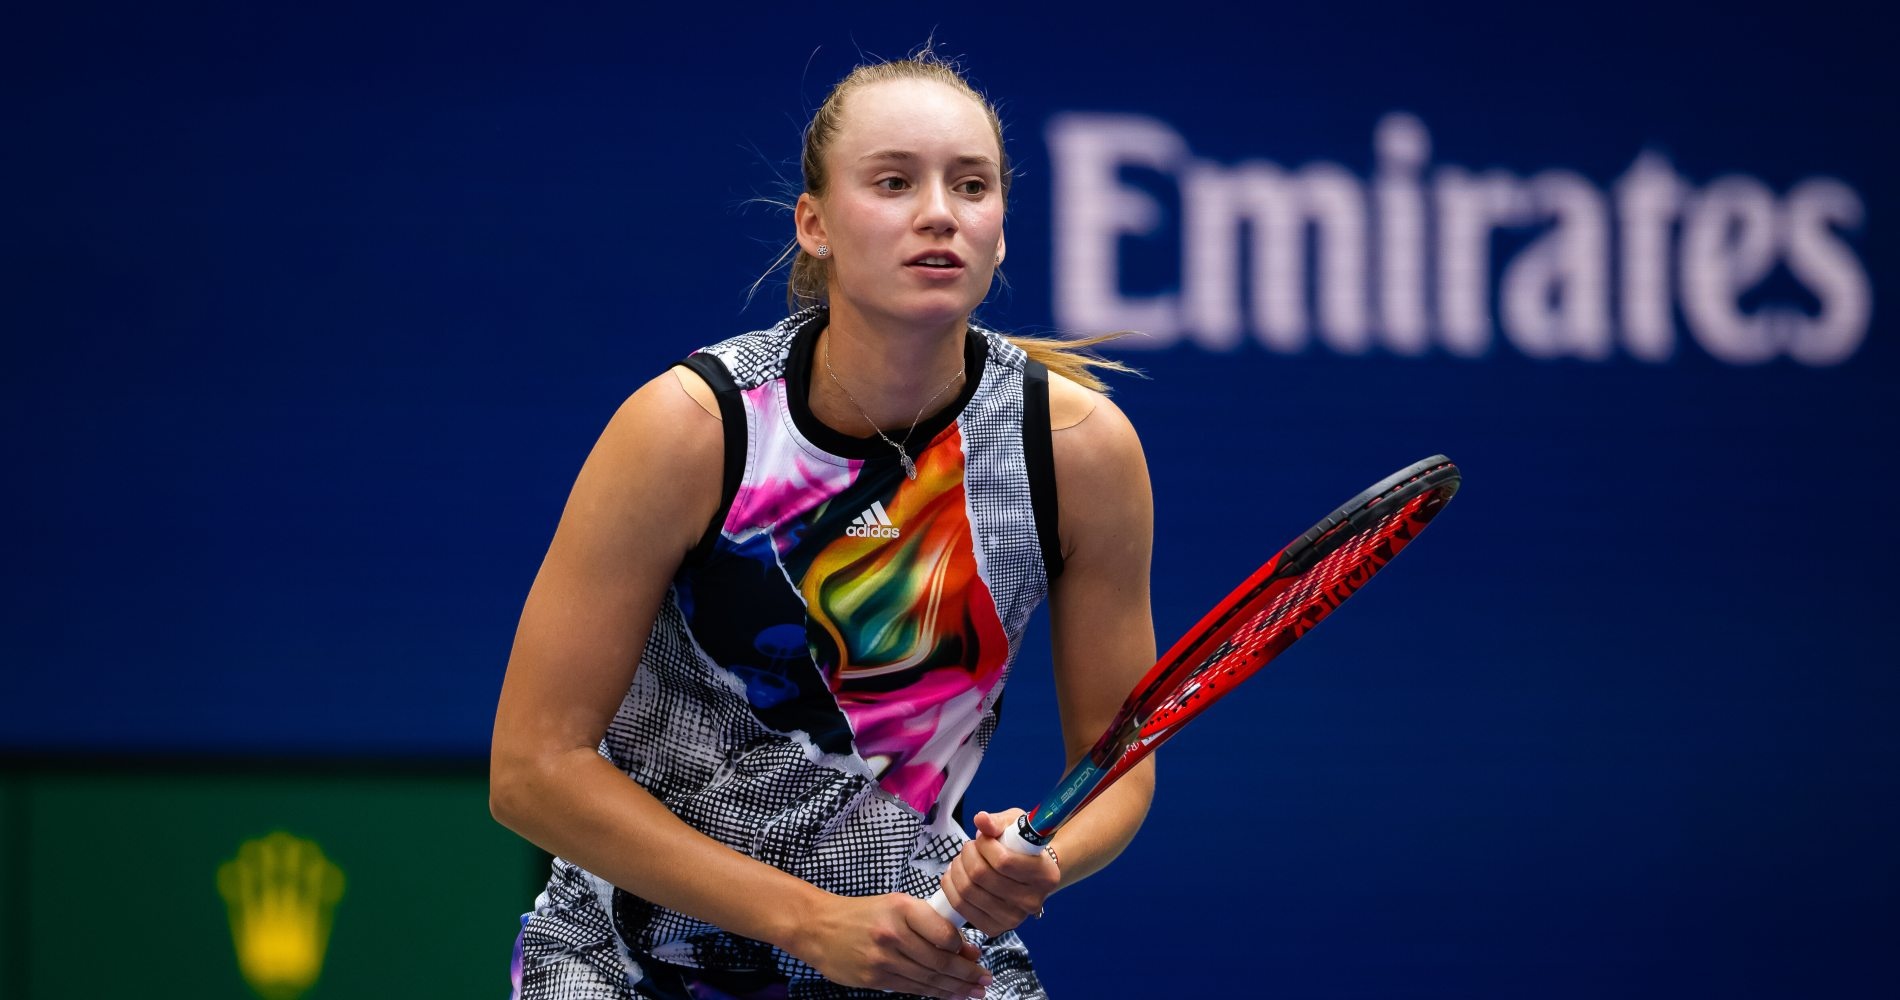 Tennis, WTA – Australian Open 2023: Rybakina beats Cocciaretto - Tennis ...